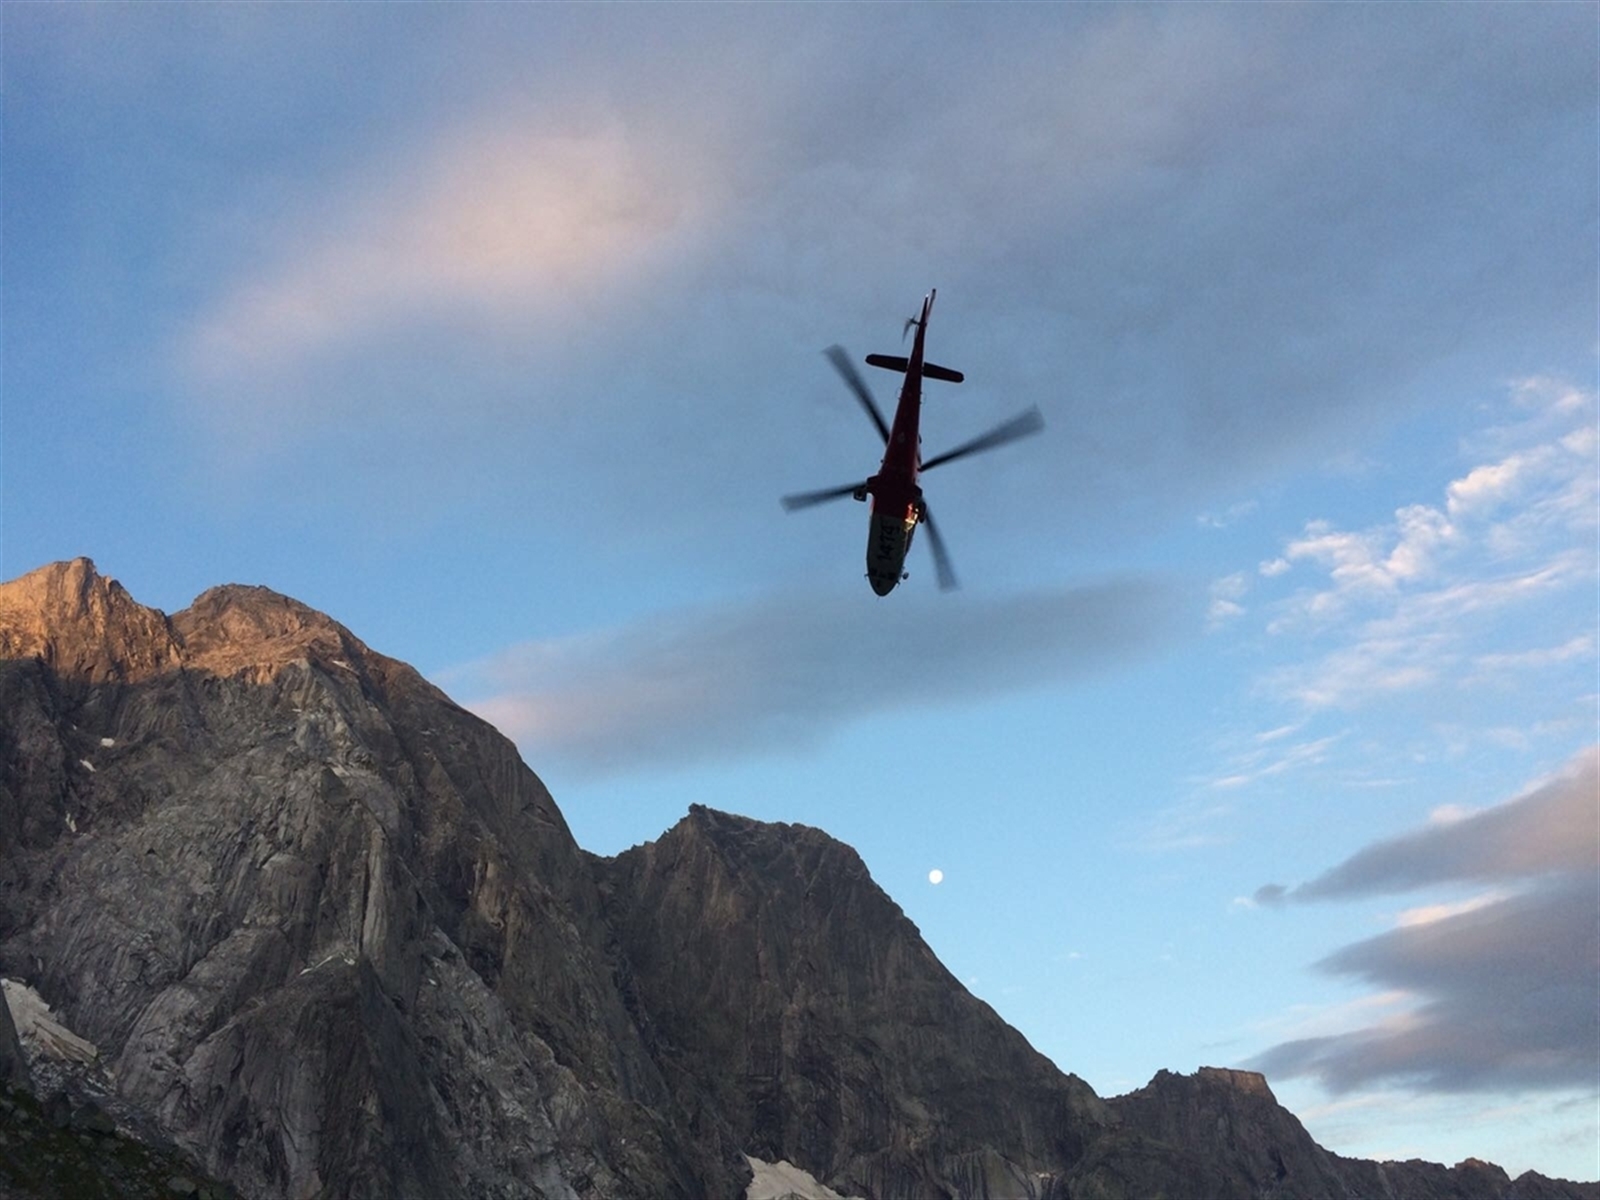 Der Polizeiflugdienst koordiniert Einsätze aus der Luft, beobachtet und klärt auf. Auch verkehrspolizeiliche Aktionen unterstützt der Flugdienst mit dem Helikopter. (Bildquelle: Kapo Graubünden)